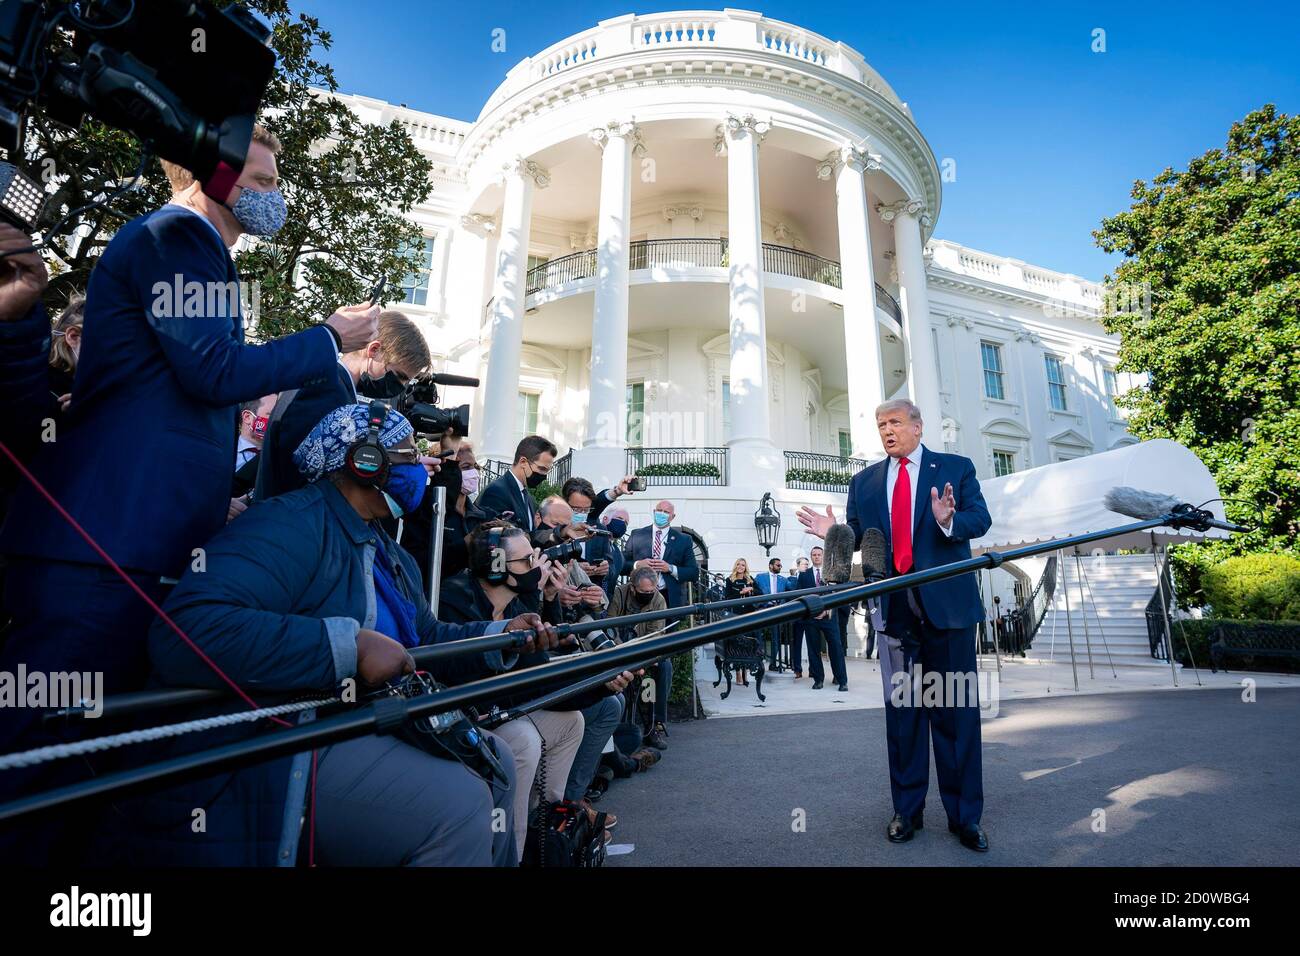 Le président Donald J. Trump parle avec des reporters devant l'entrée de la Maison Blanche à South Portico le samedi 19 septembre 2020, avant d'embarquer à bord de Marine One pour commencer son voyage à Fayetteville, en Caroline du Nord (ÉTATS-UNIS) Banque D'Images